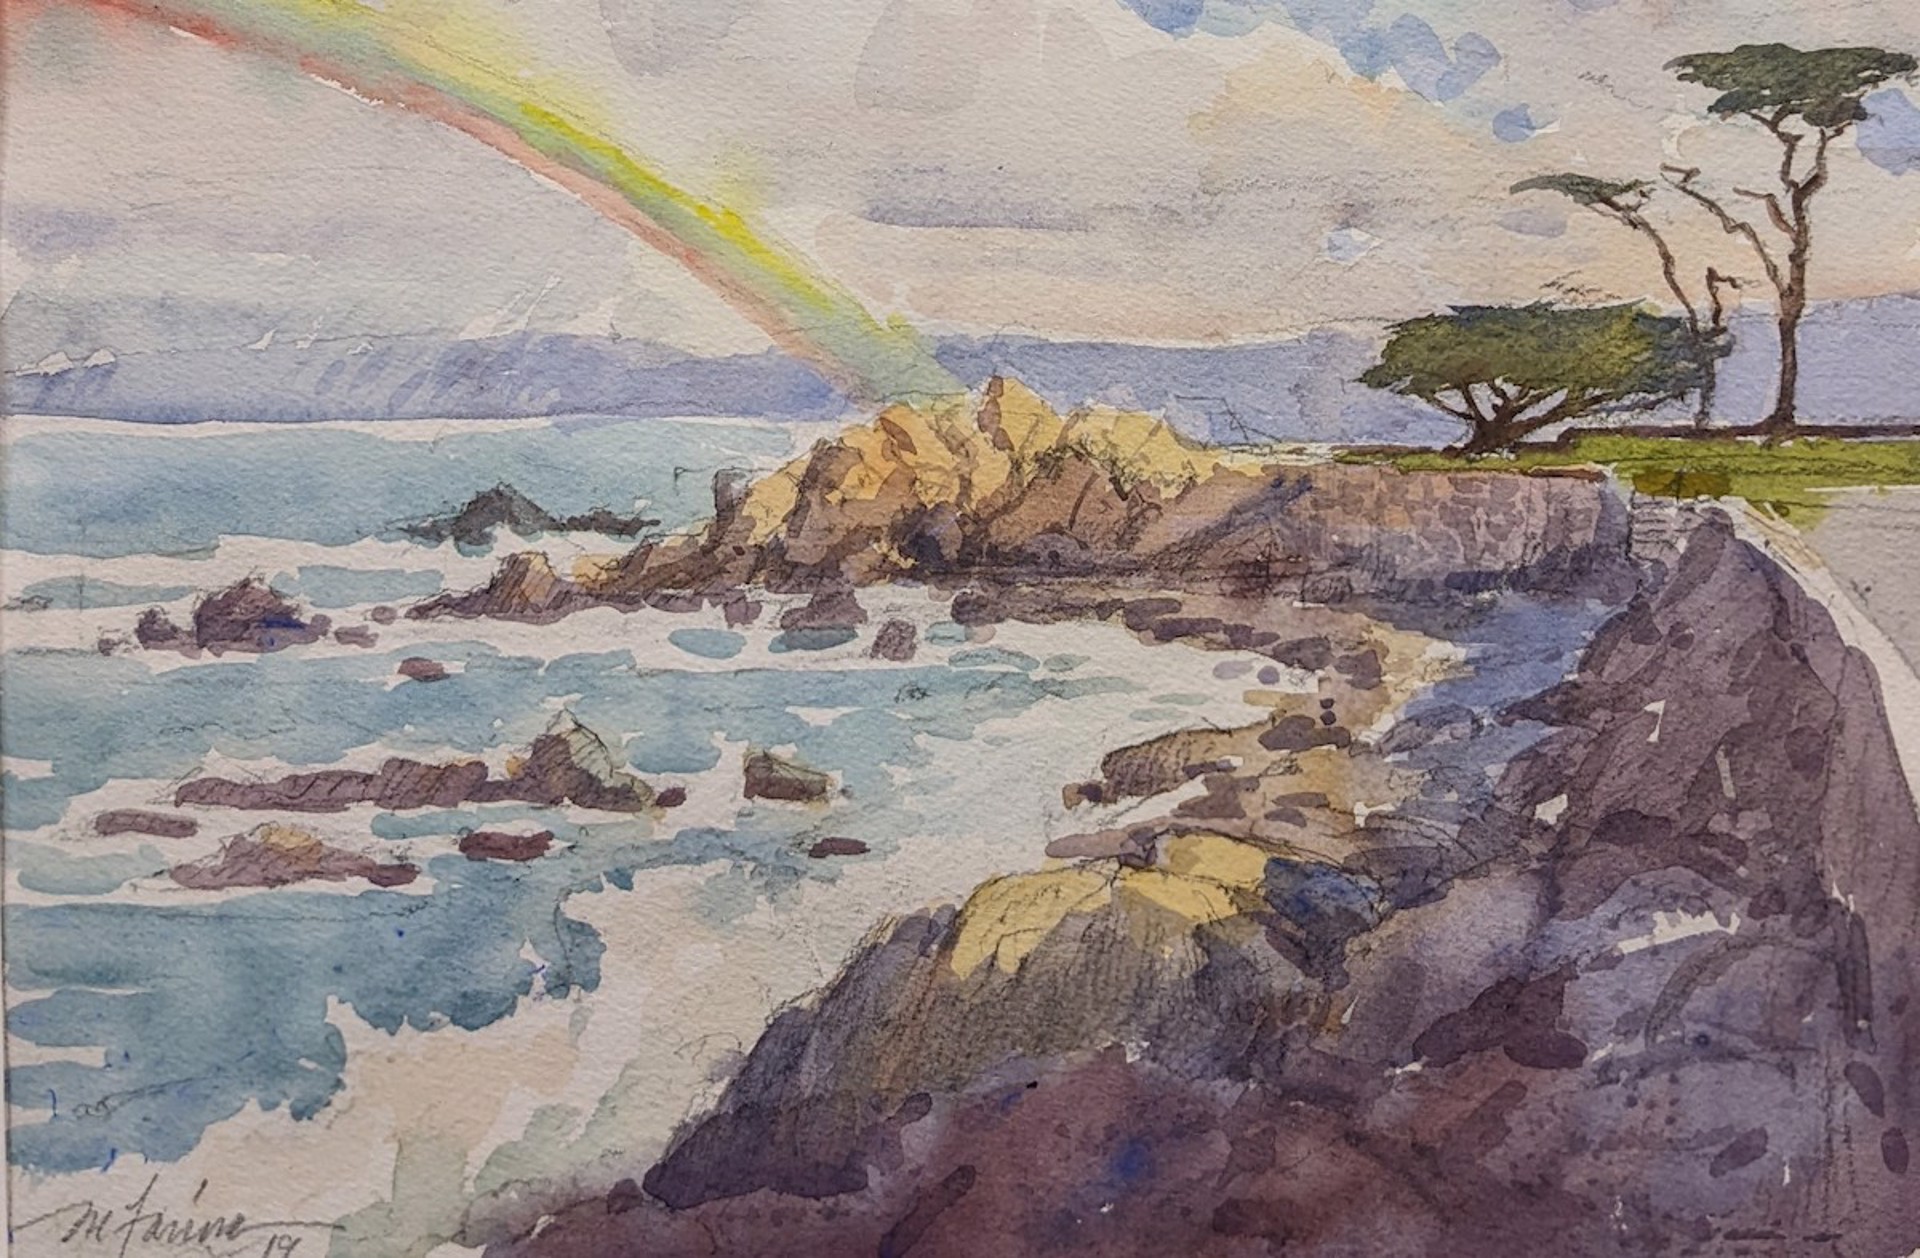 Rainbow Over Monterey Bay by Mark Farina